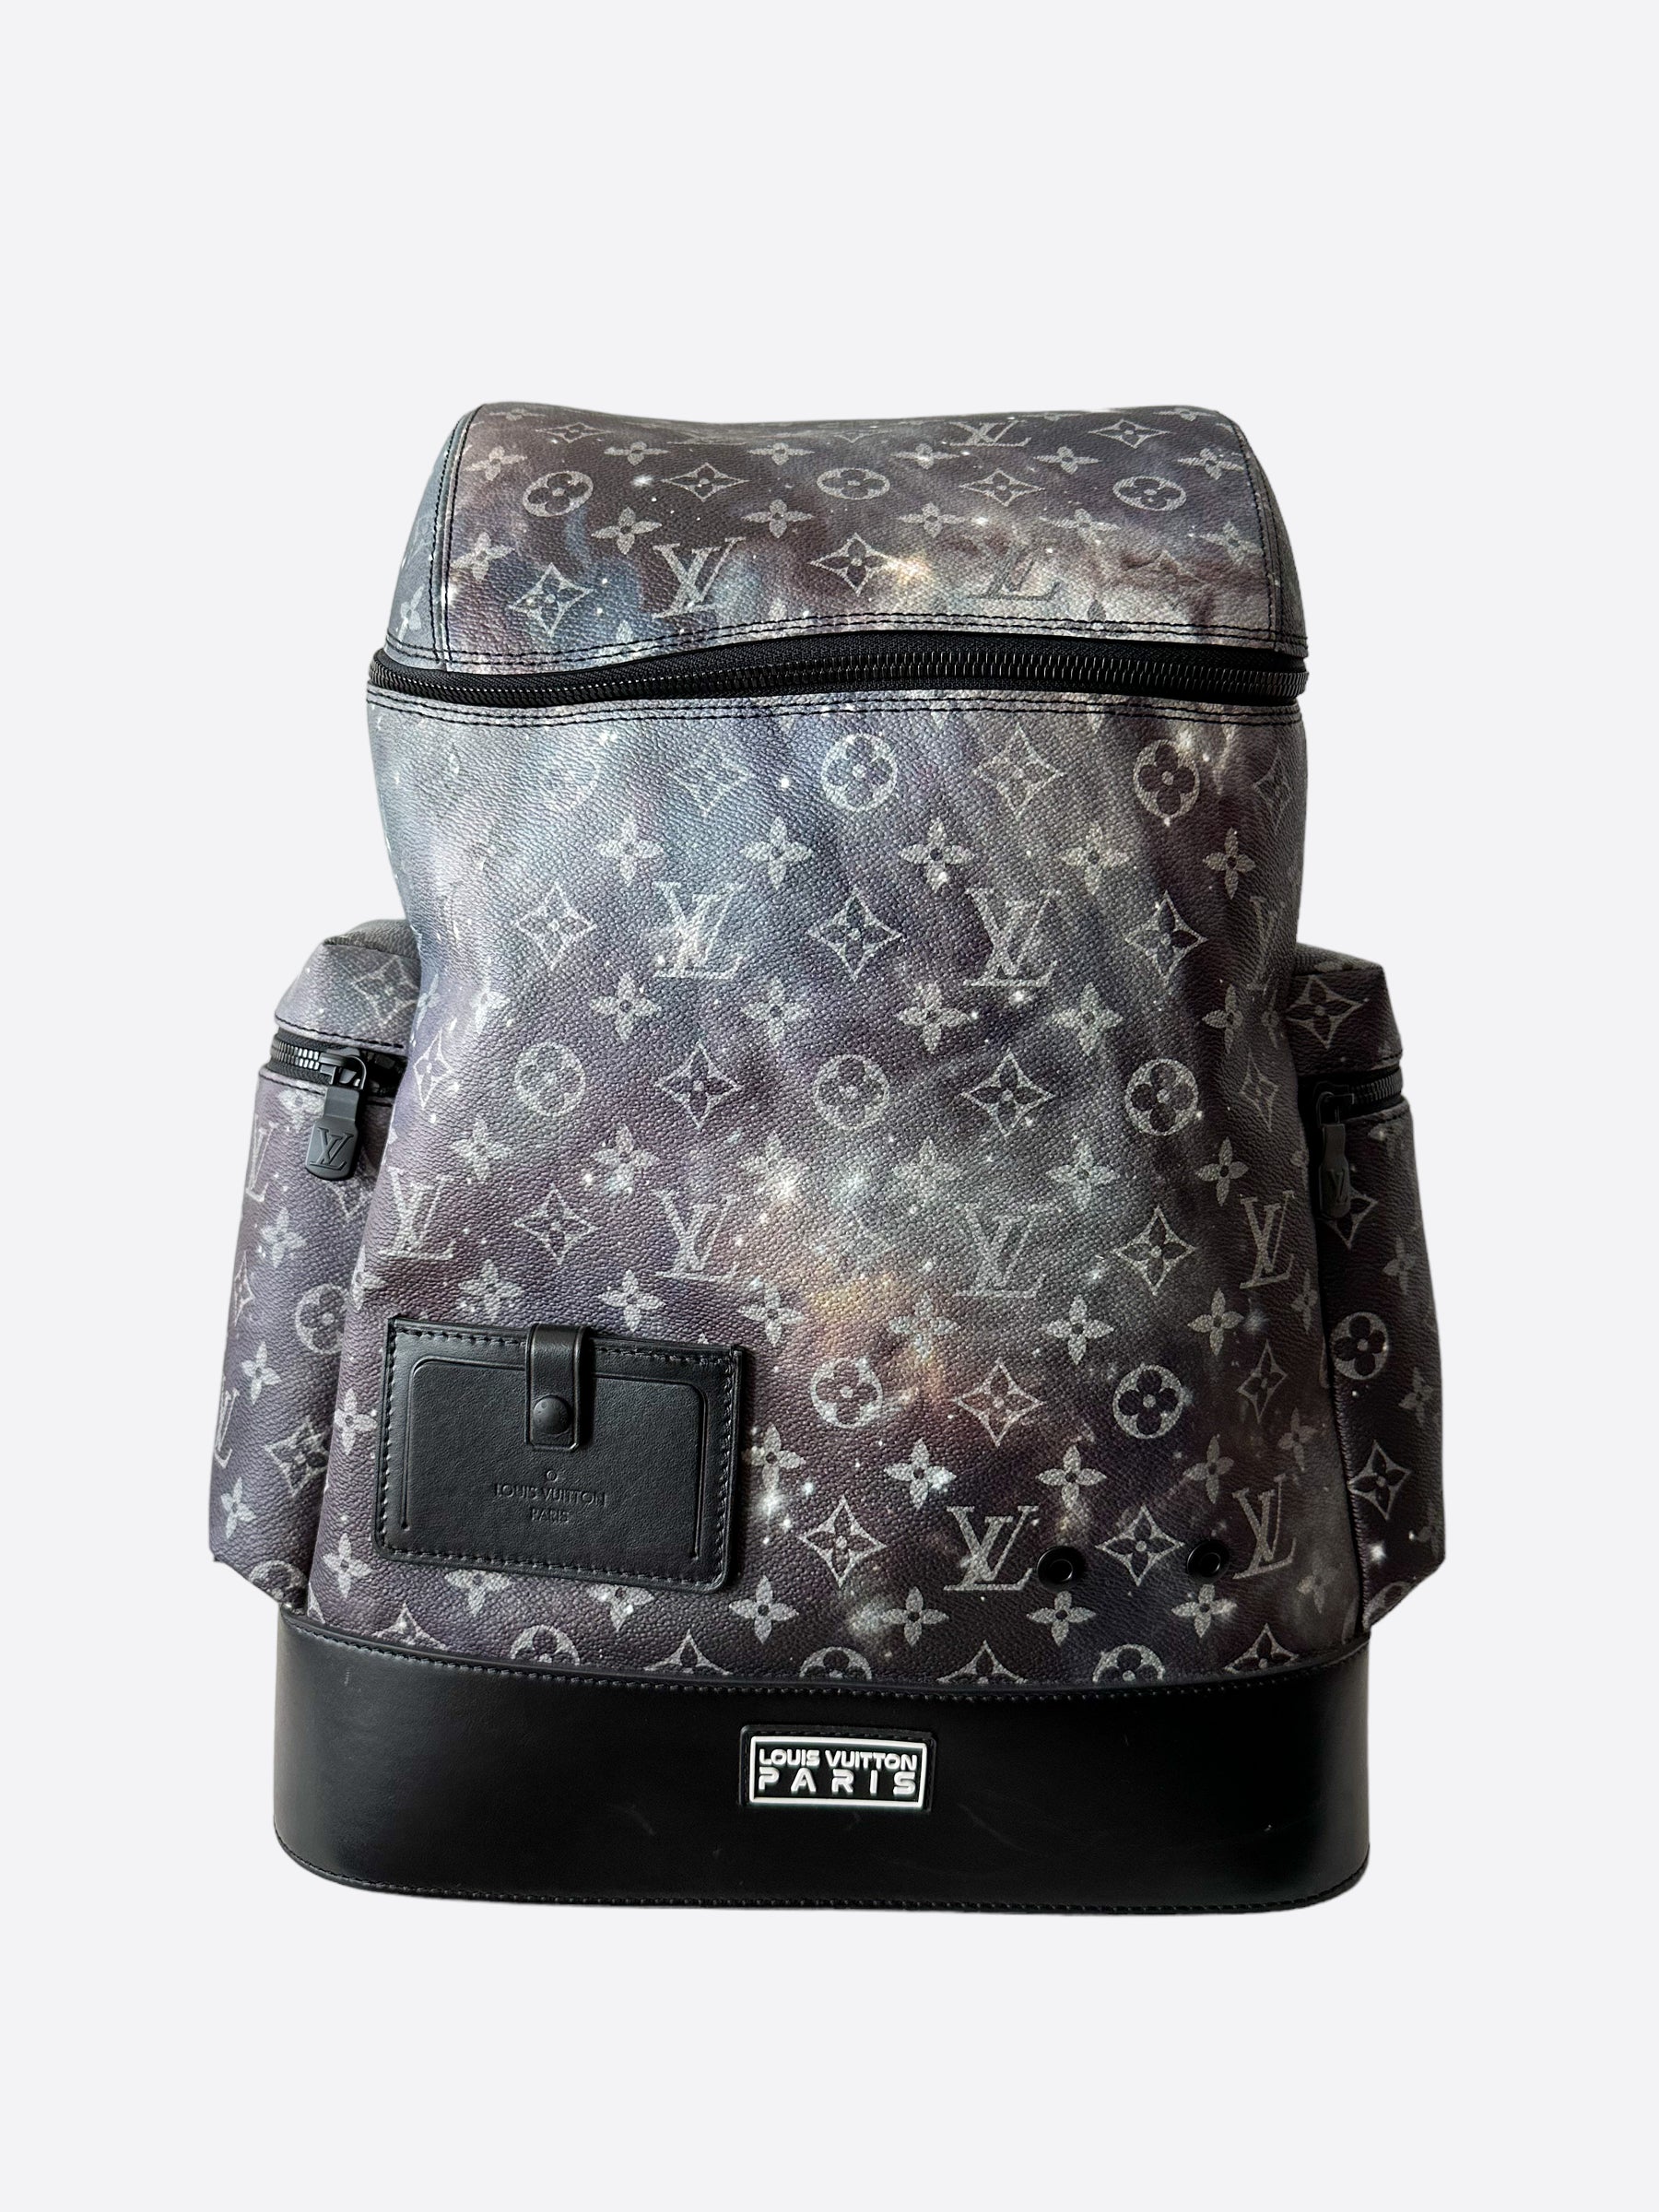 alpha backpack monogram